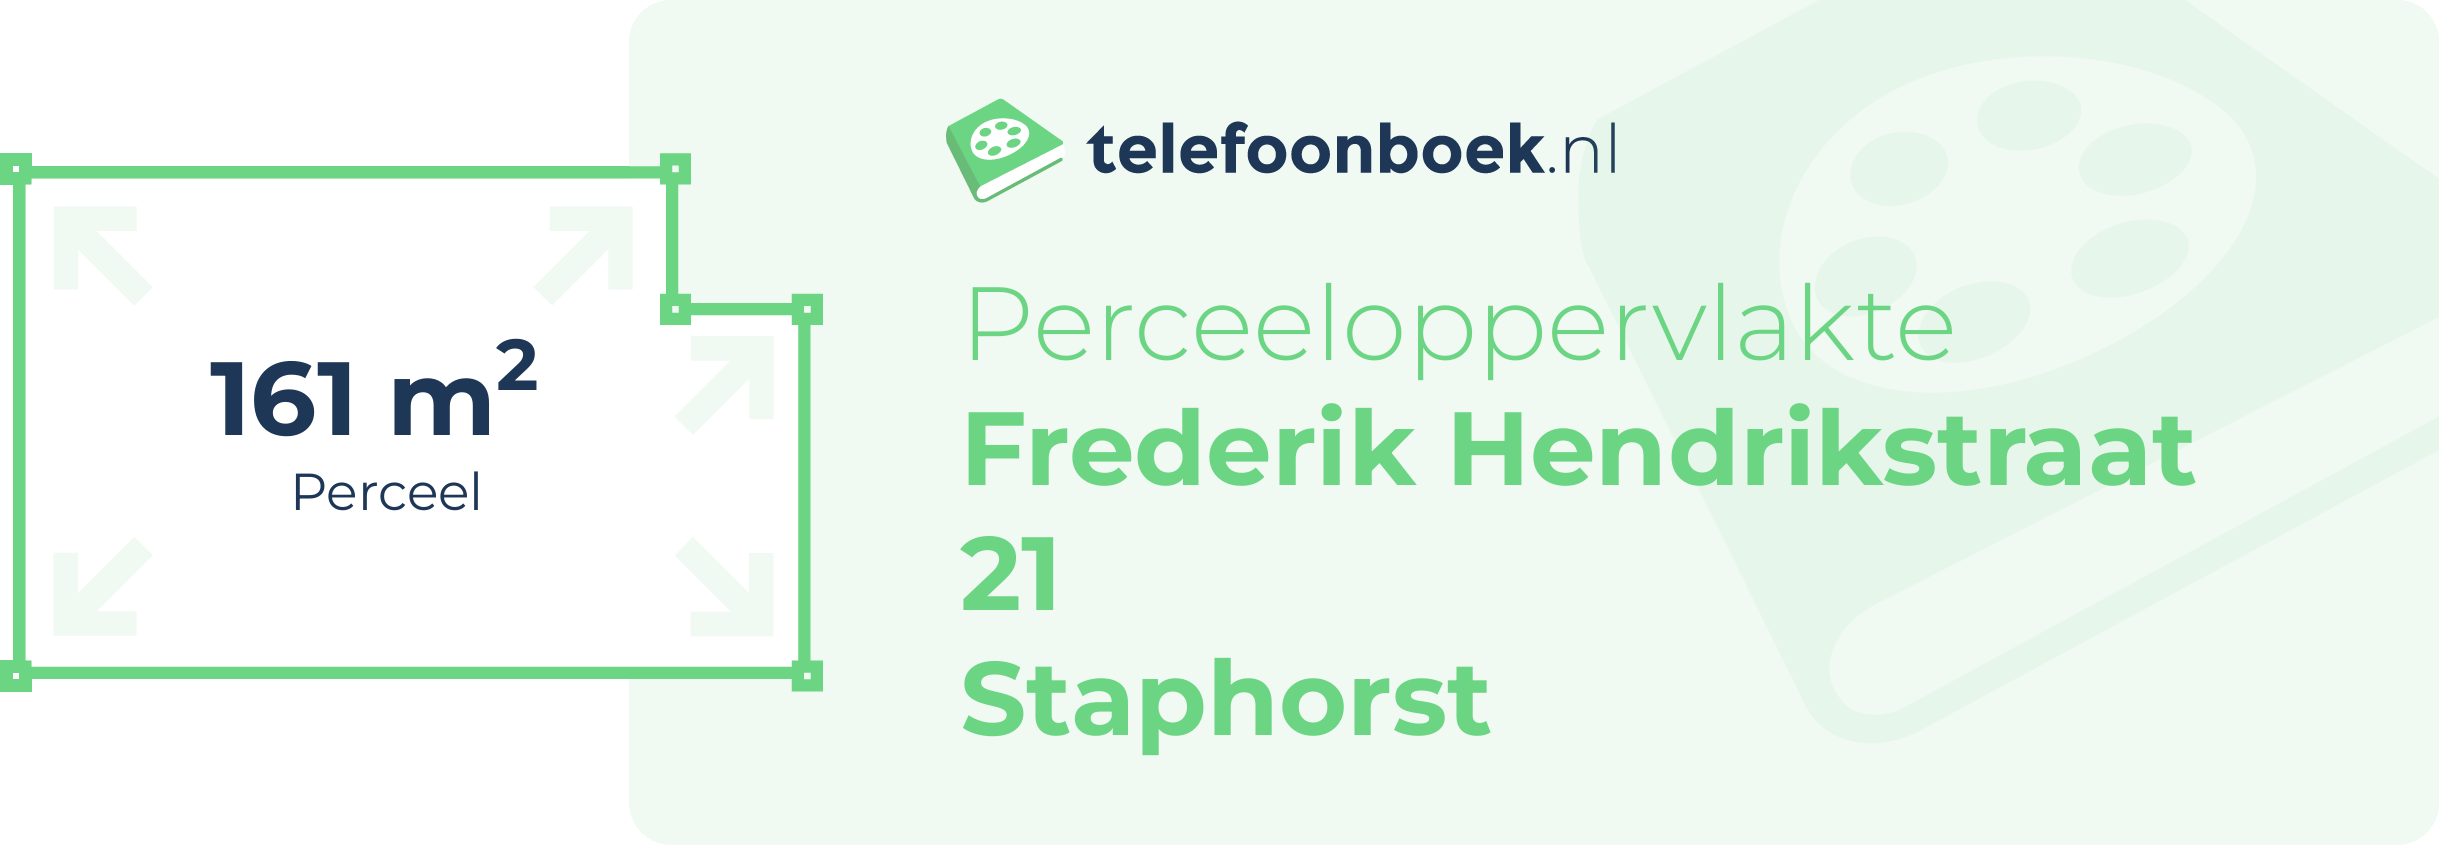 Perceeloppervlakte Frederik Hendrikstraat 21 Staphorst